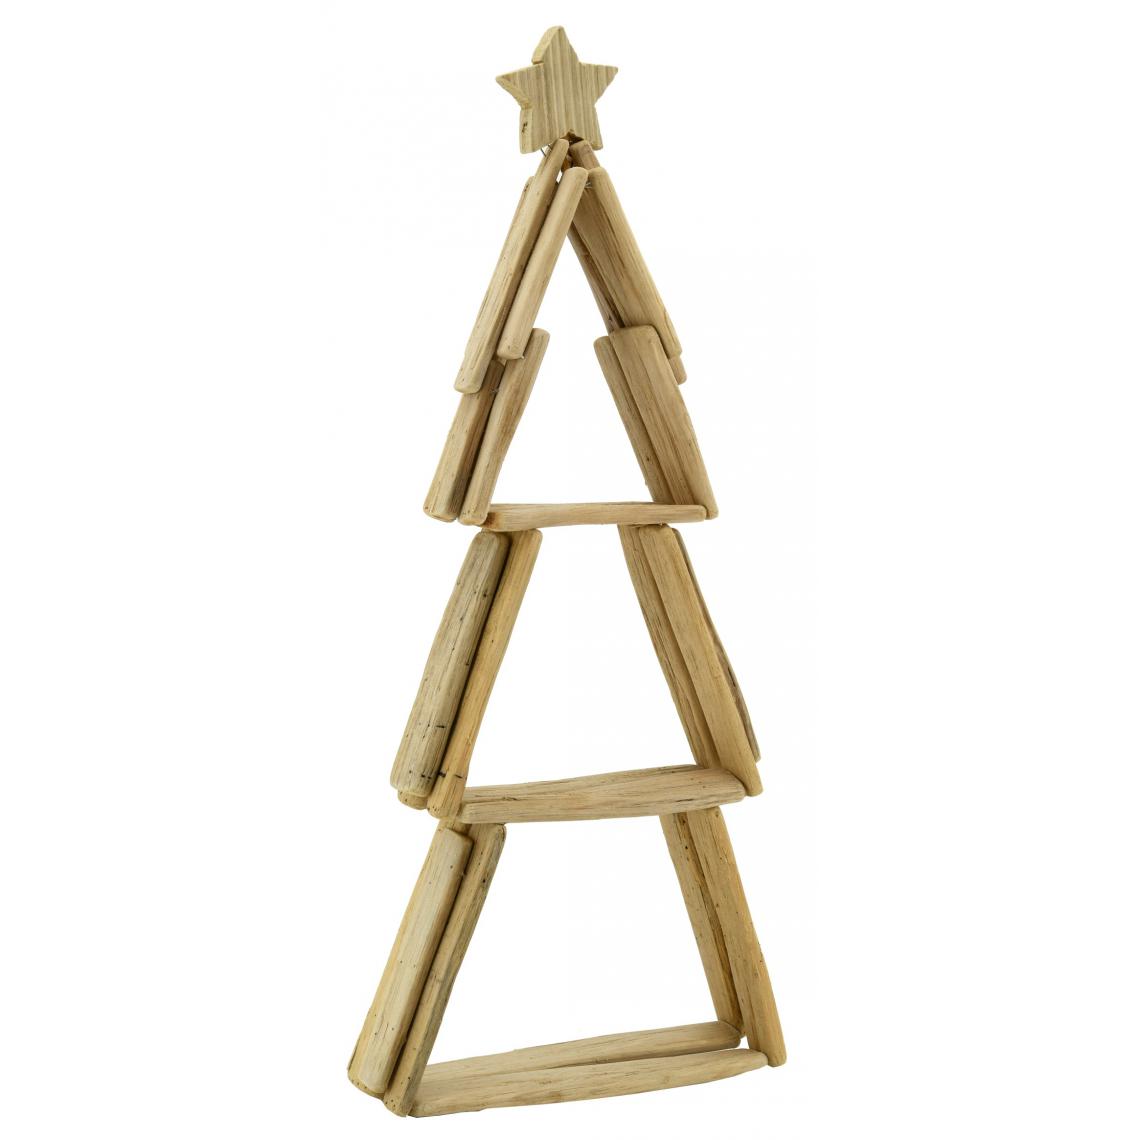 Aubry Gaspard - Sapin en bois flotté avec étoile - Décorations de Noël